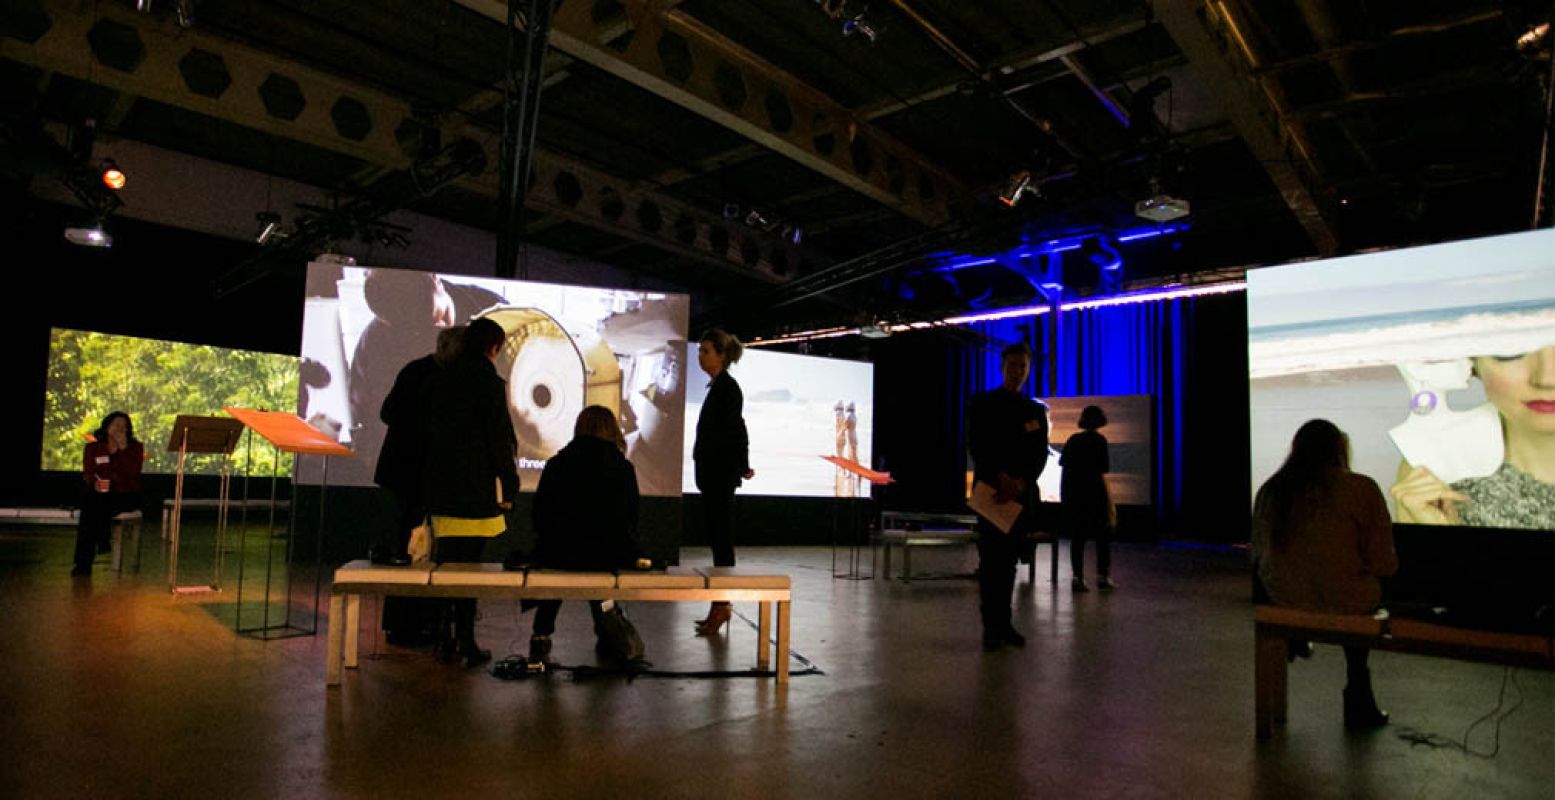 Projections toont films op grote schermen. Foto: Geert Broertjes, Art Rotterdam 2016